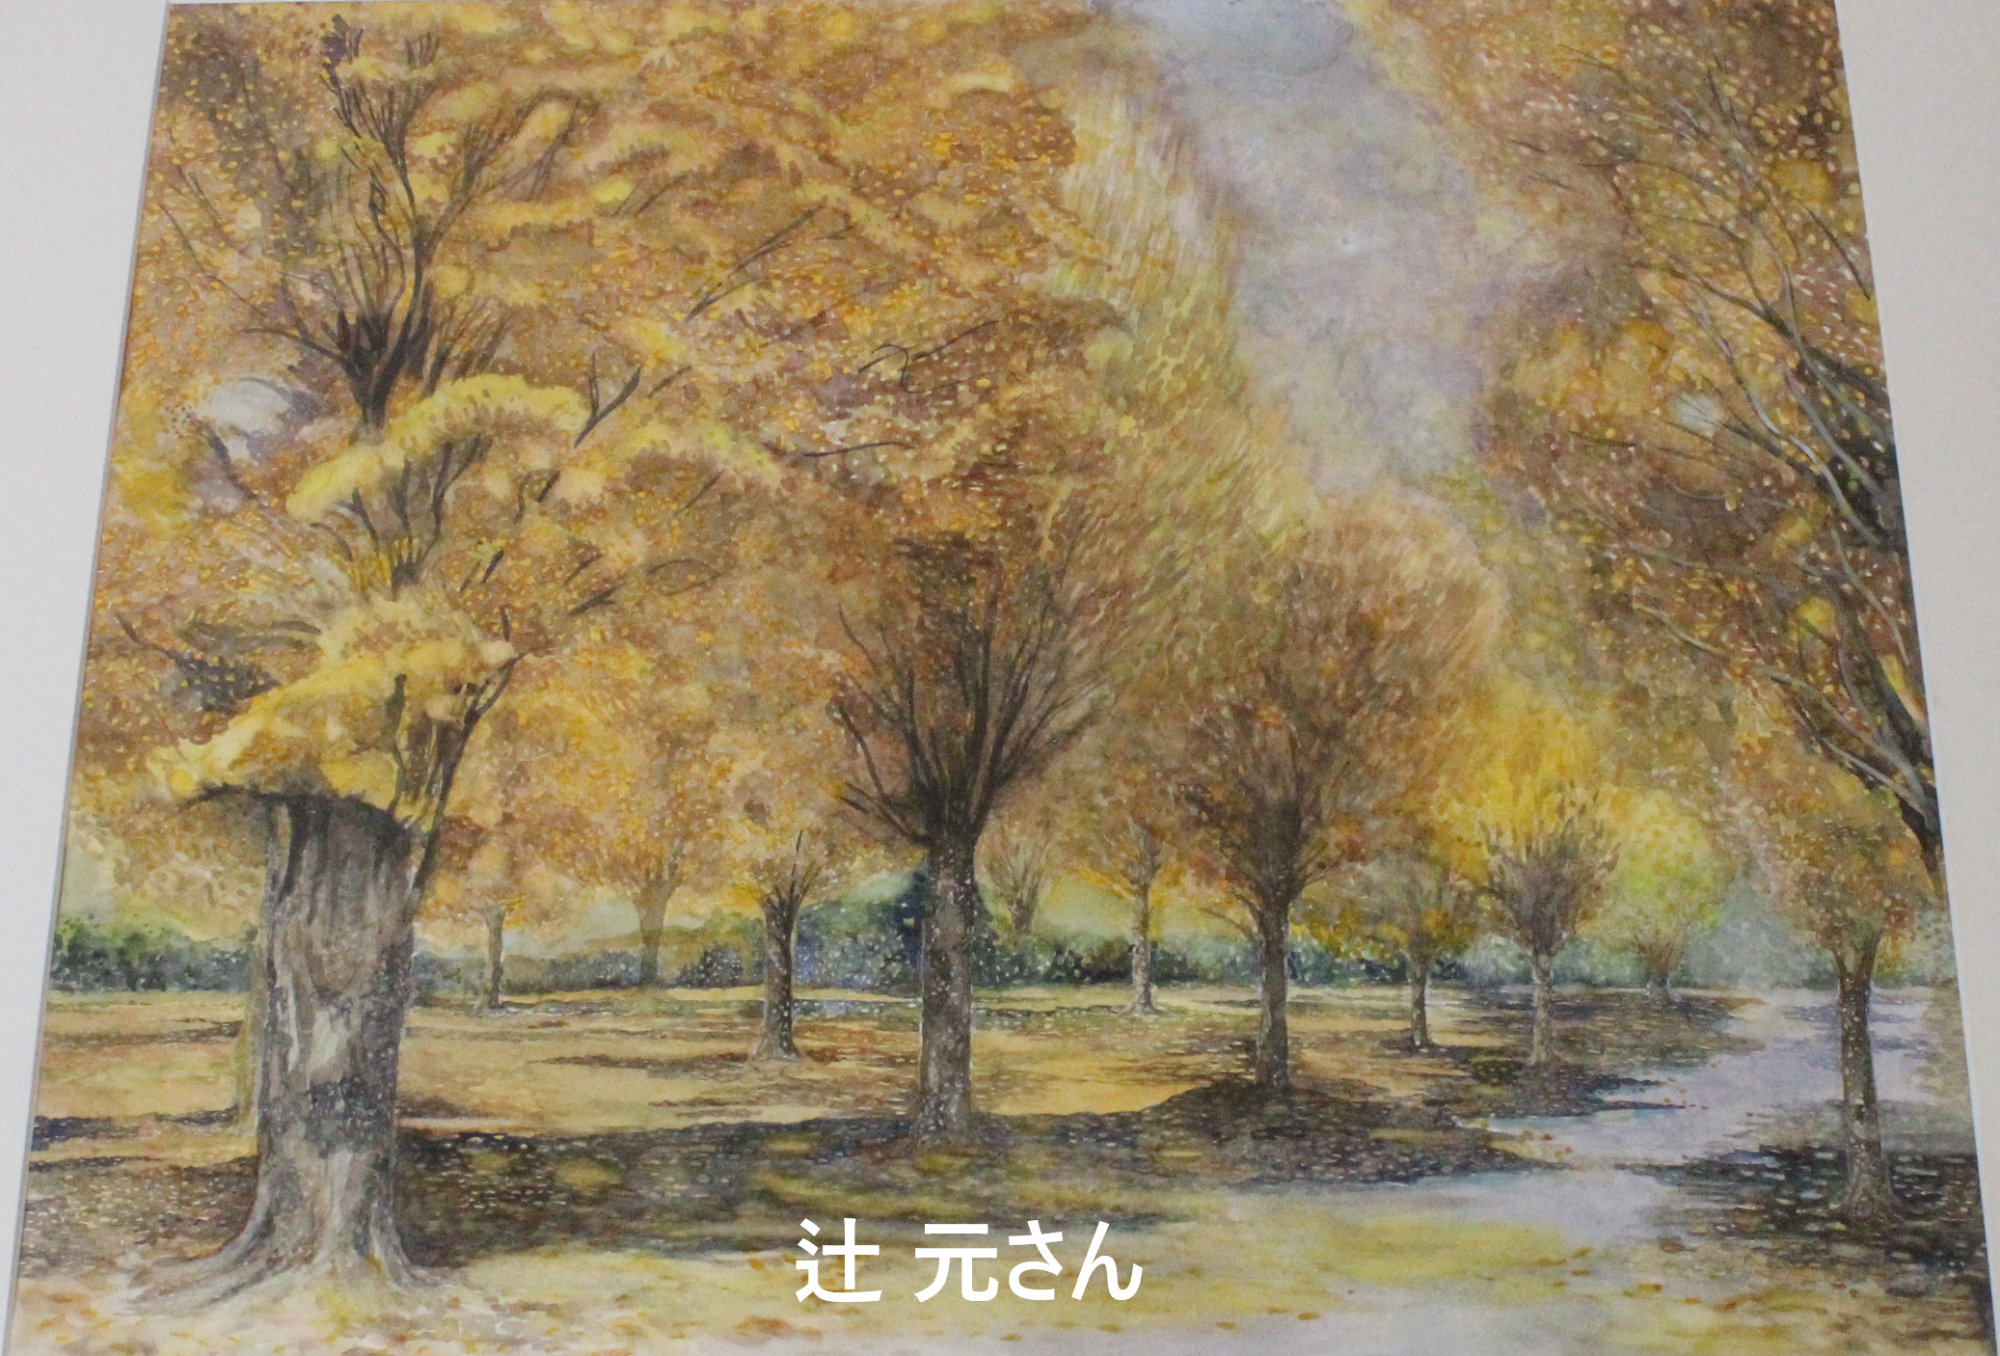 イチョウの木々を柔らかいタッチで描いた洋画部門の大賞受賞作品